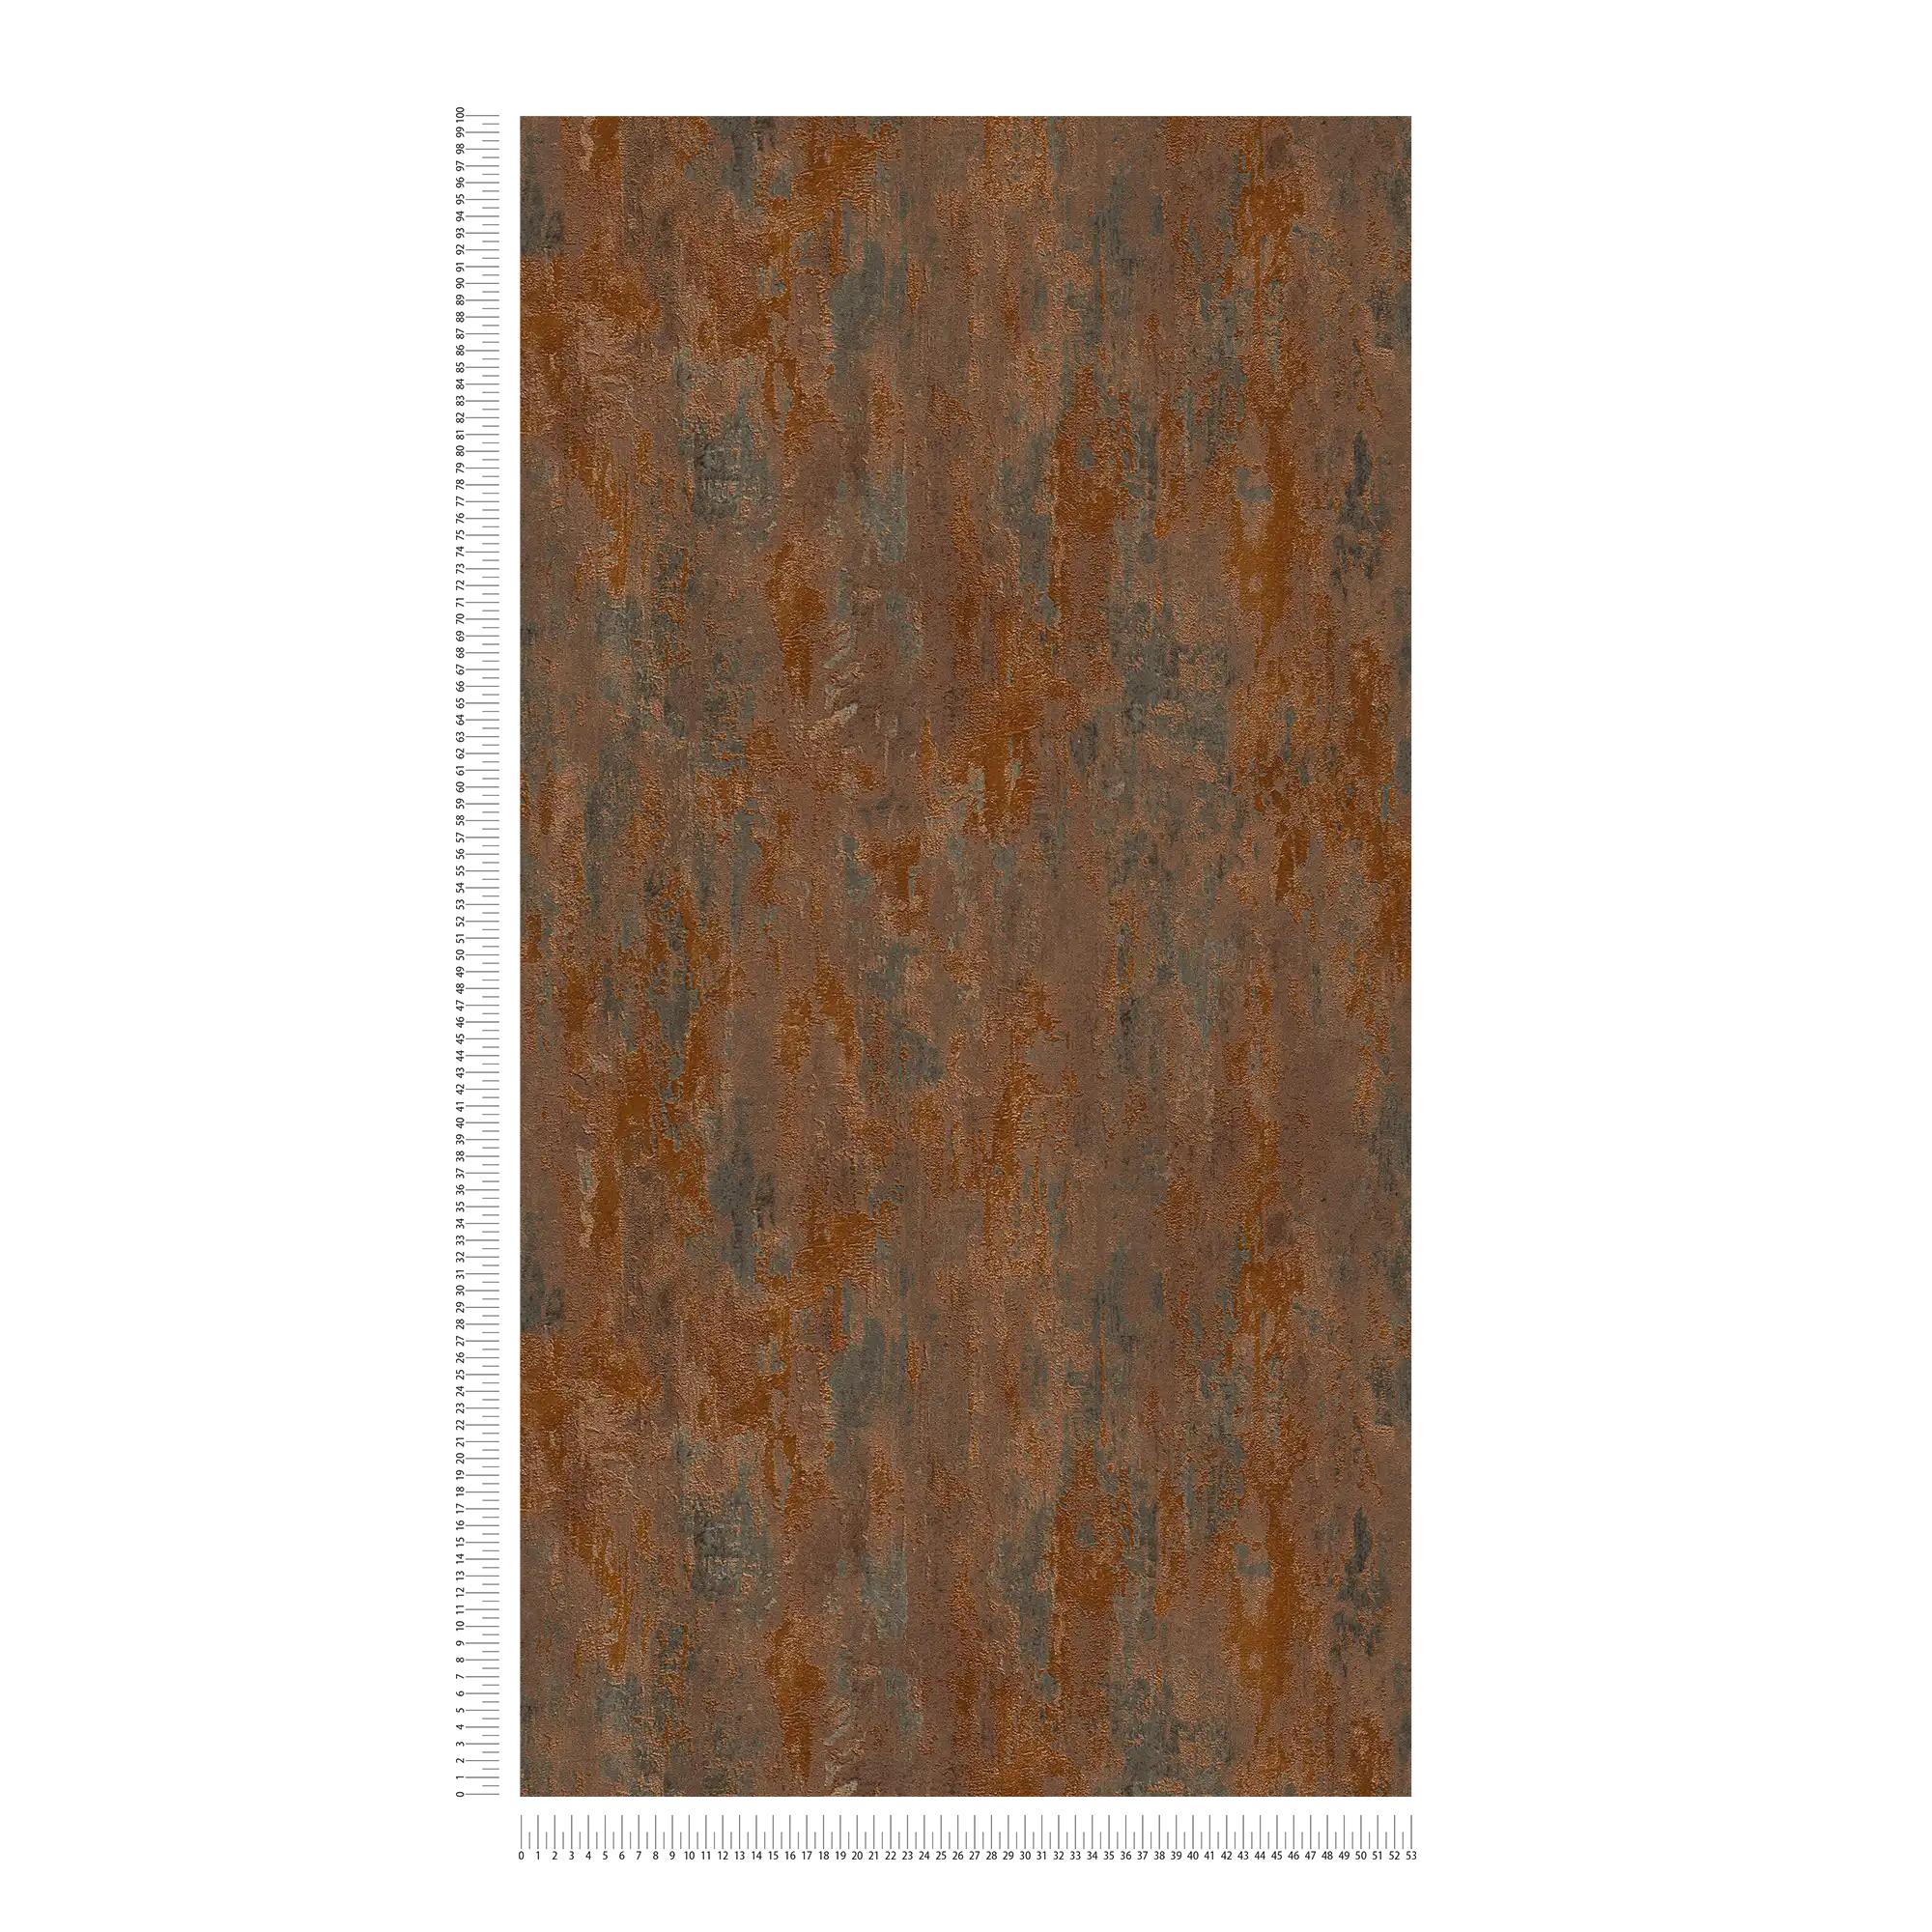             Tapete Rost & Metallic-Effekt im Industrial Stil – Orange, Kupfer, Braun
        